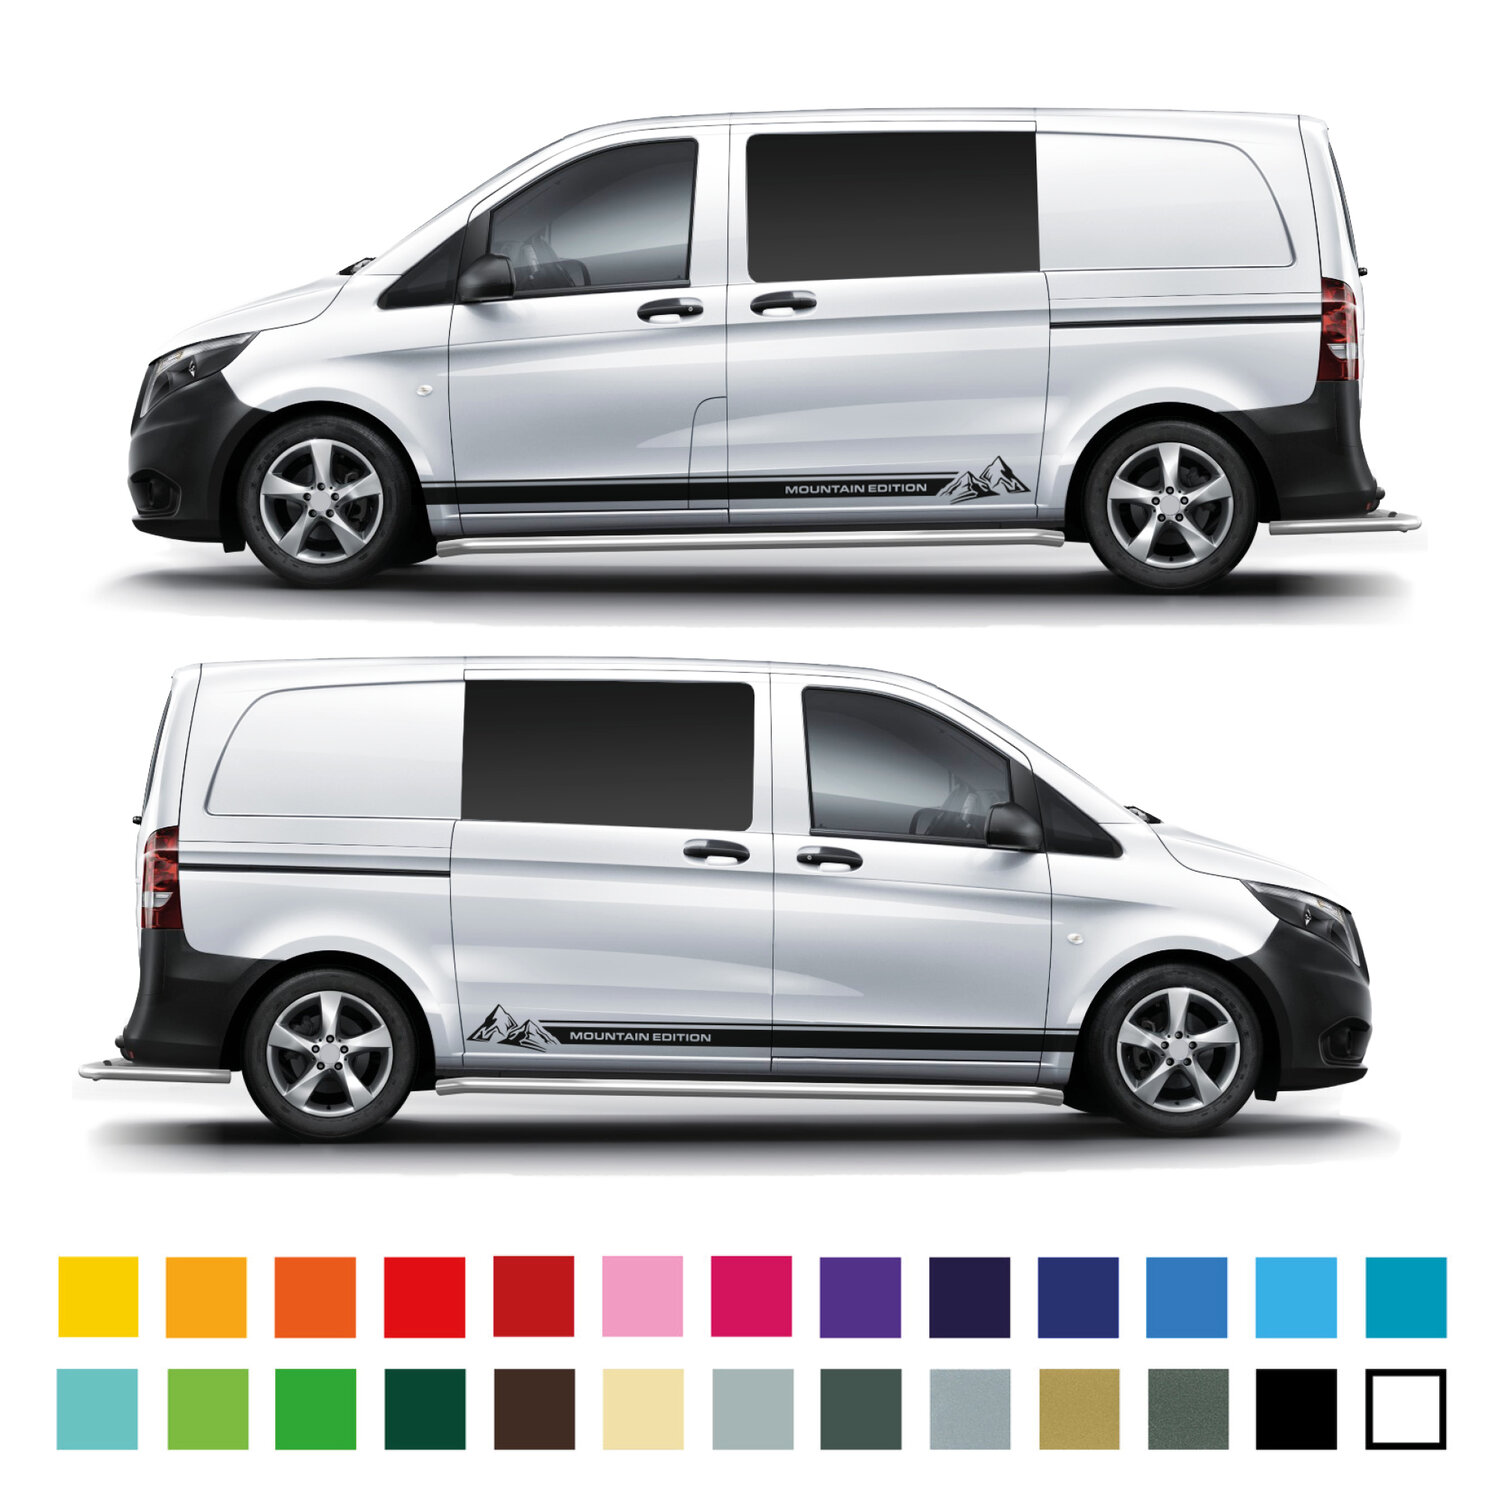 Mercedes Vito Graphics stripes Camper Van Decals Stickers mv5